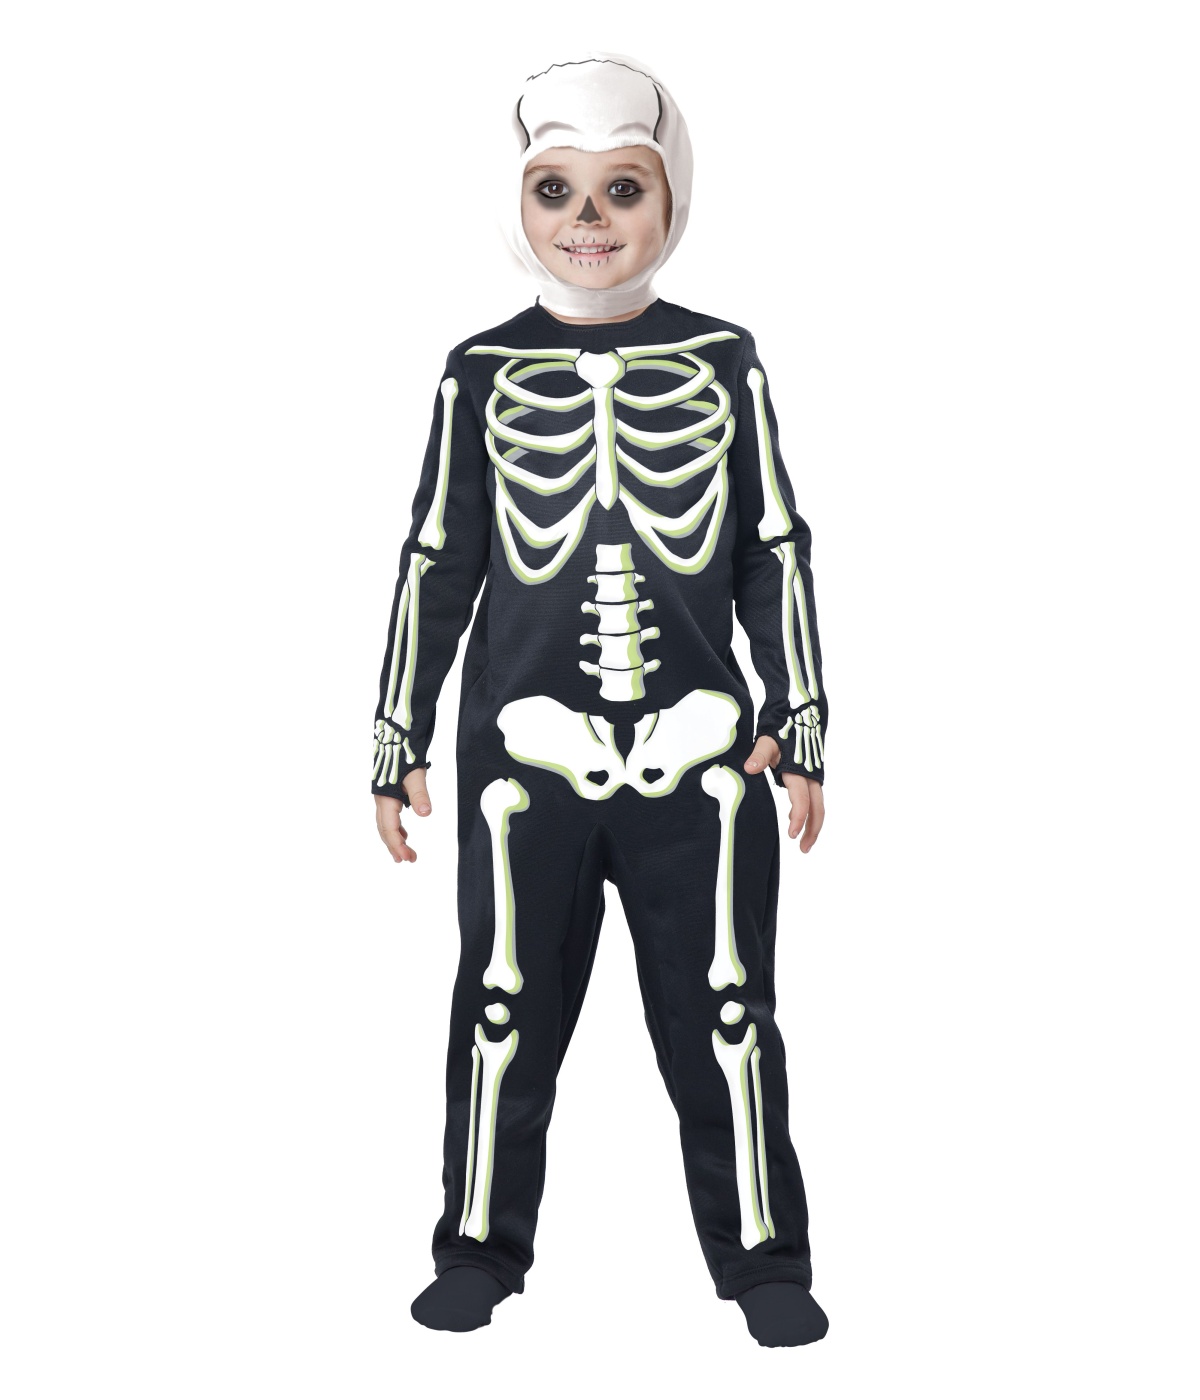  Boys Short Ribs Skeleton Costume